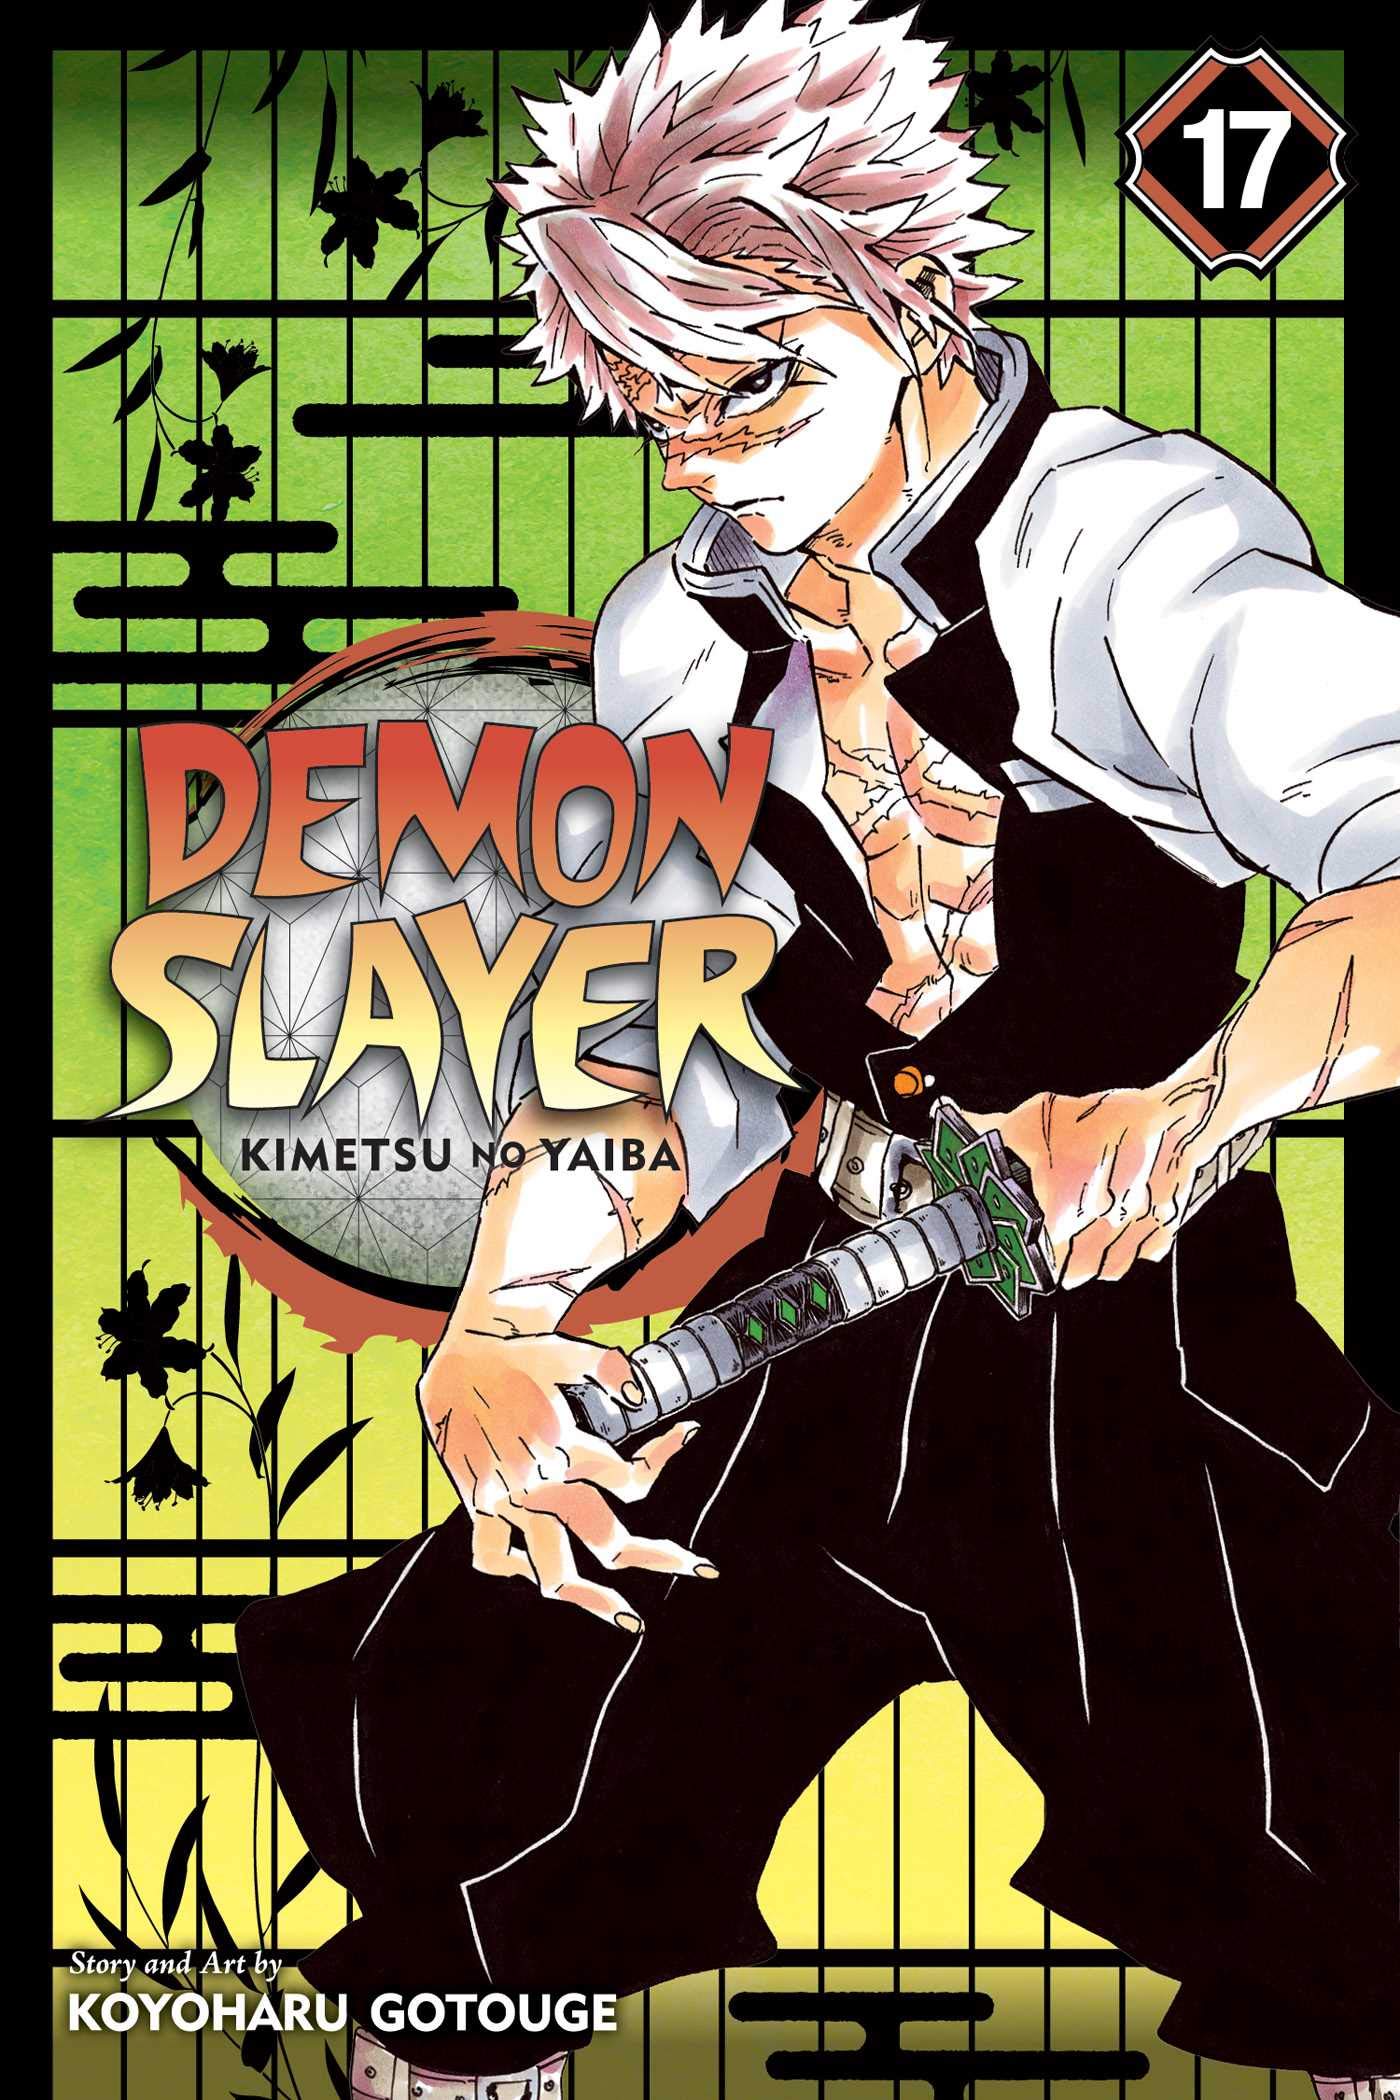 Tanjiro Kamado Vol.18 - Kimetsu no Yaiba - Demon Slayer